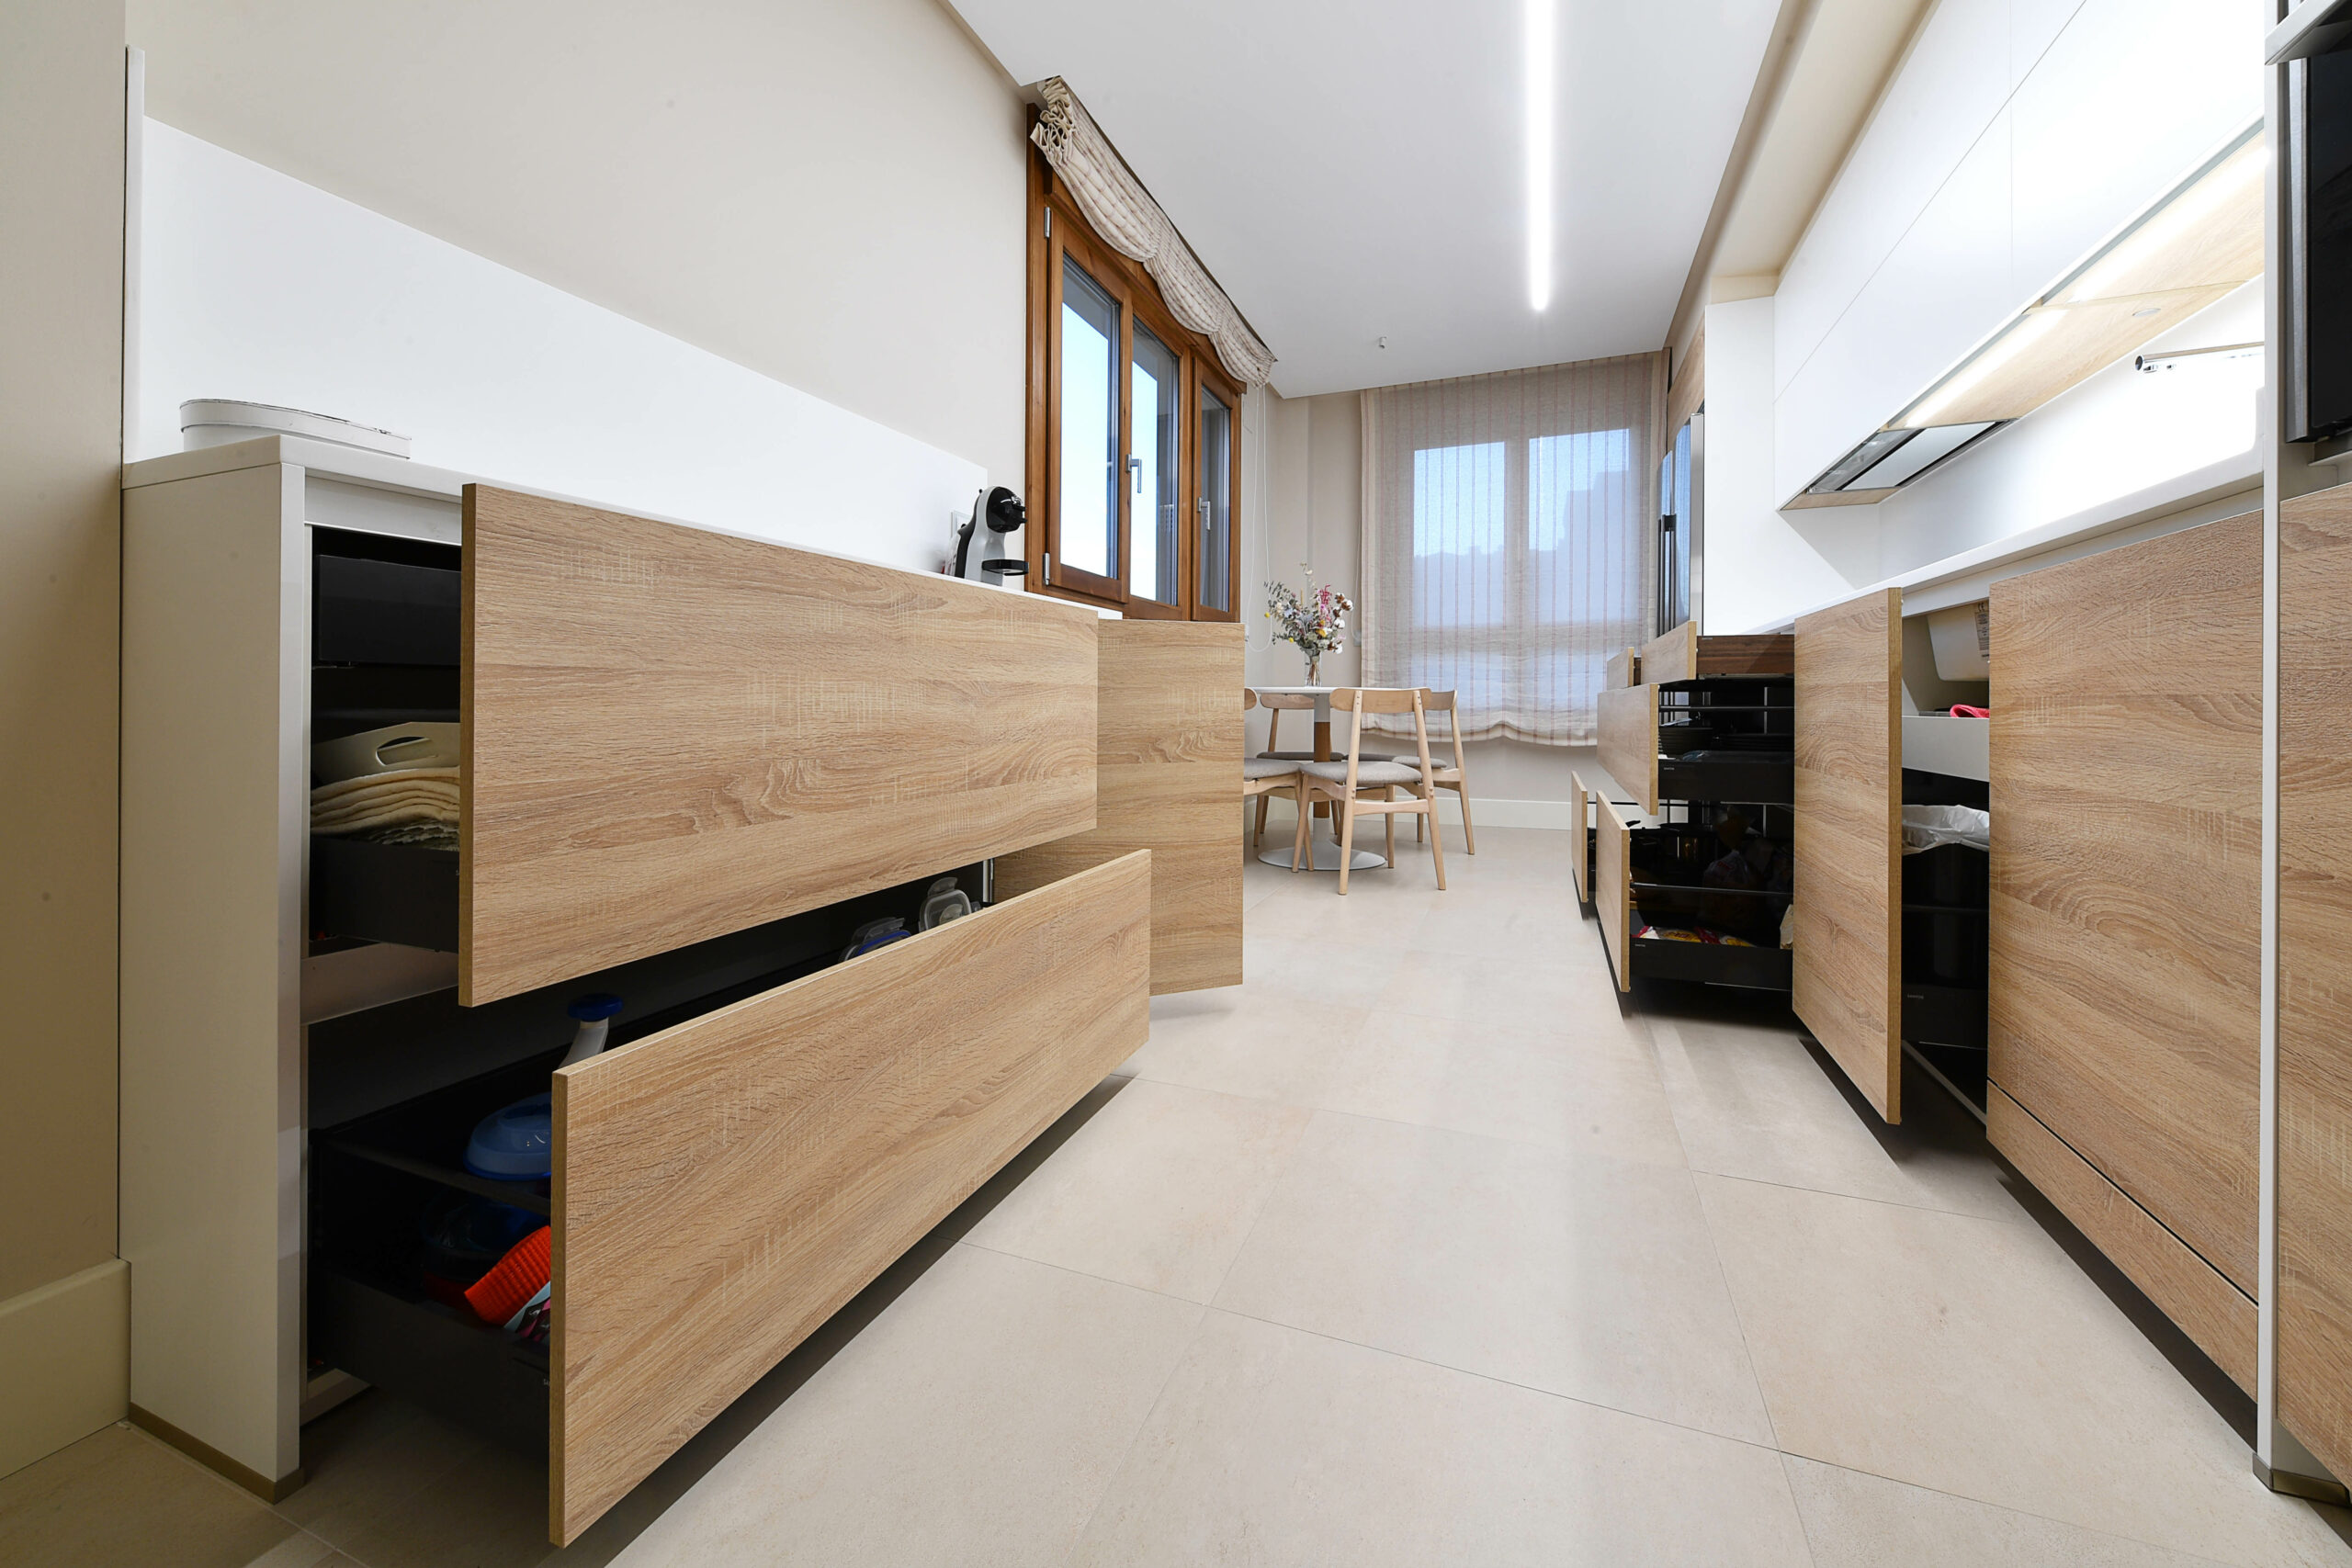 gavetas en madera y negro en cocina moderna blanca y madera cjr